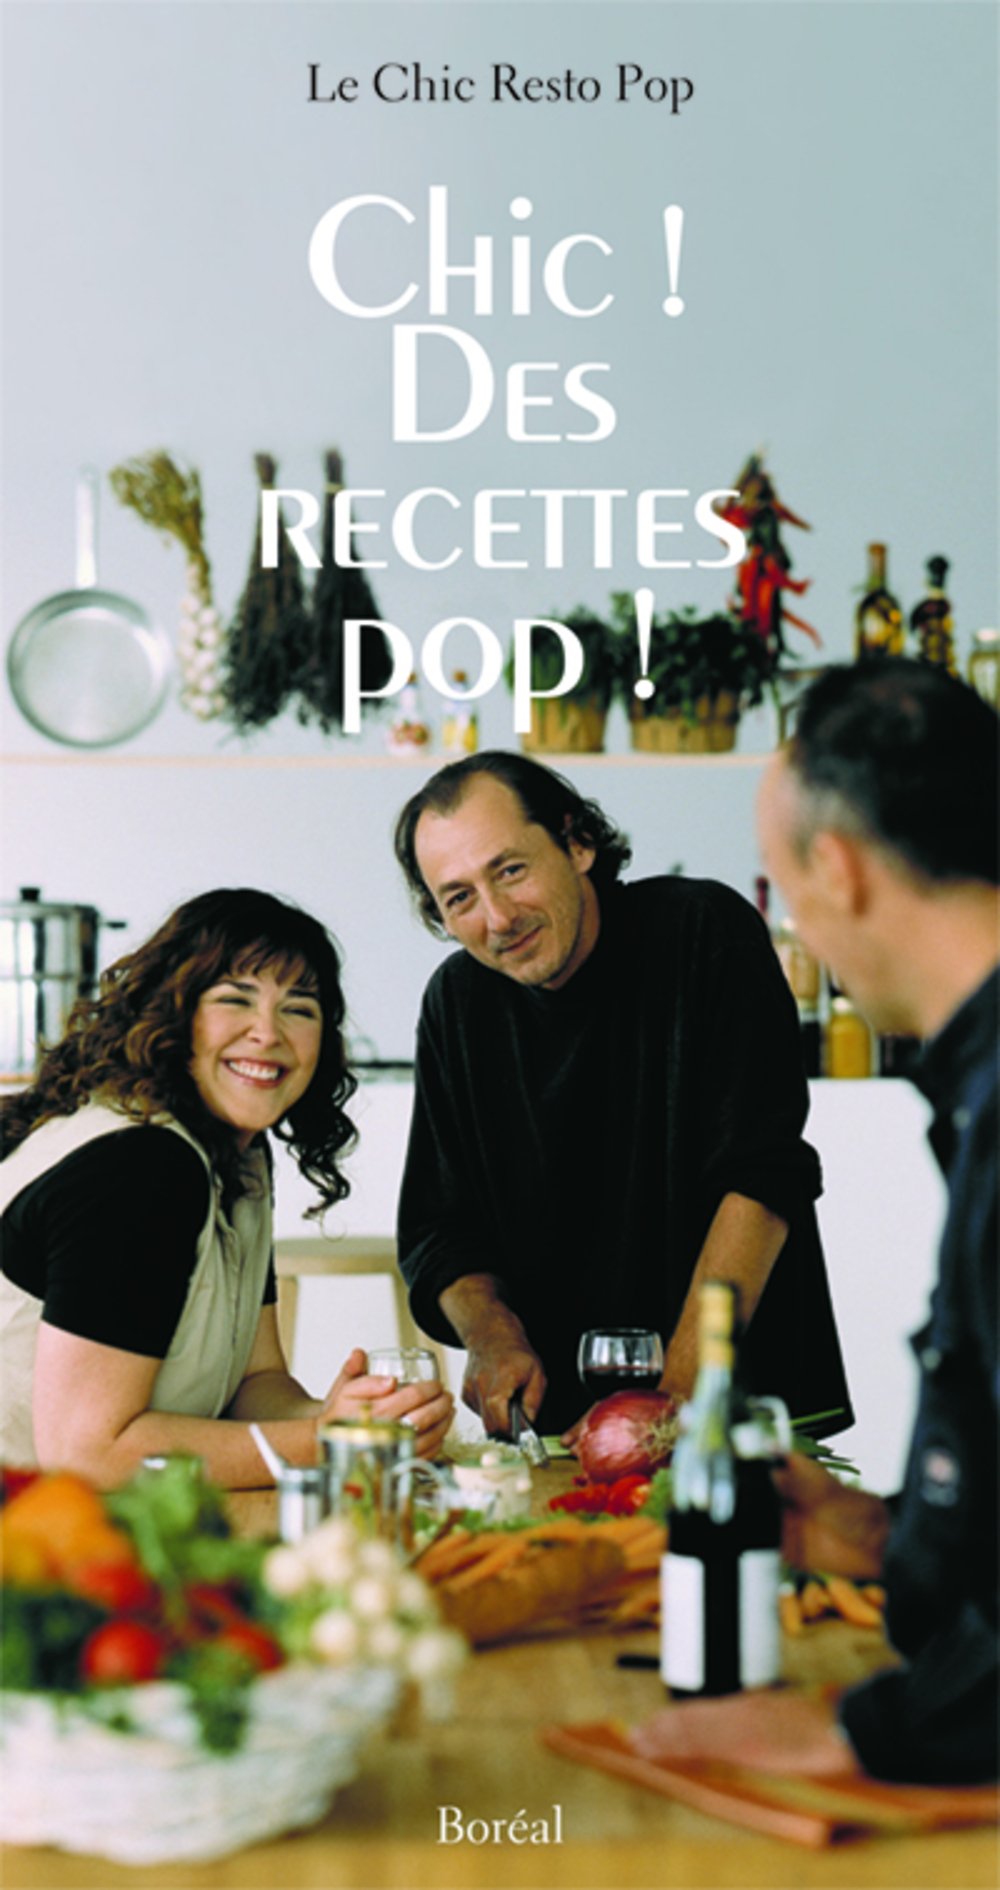 Livre ISBN 2764600720 Chic! Des recettes pop! (Chic Resto Pop)